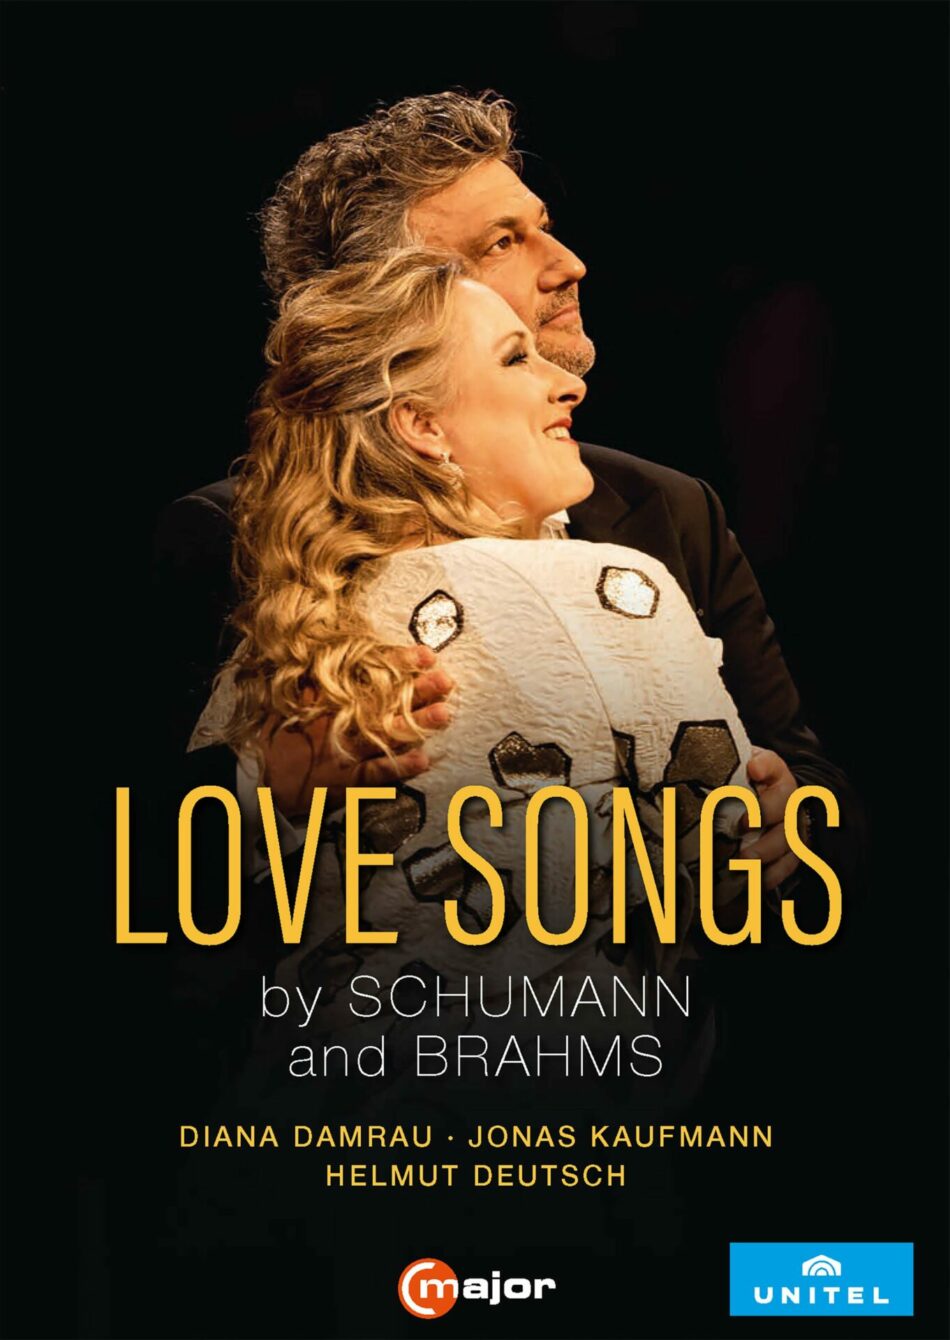 Jonas Kaufmann und Diana Damrau singen von der Liebe in reiferen Jahren